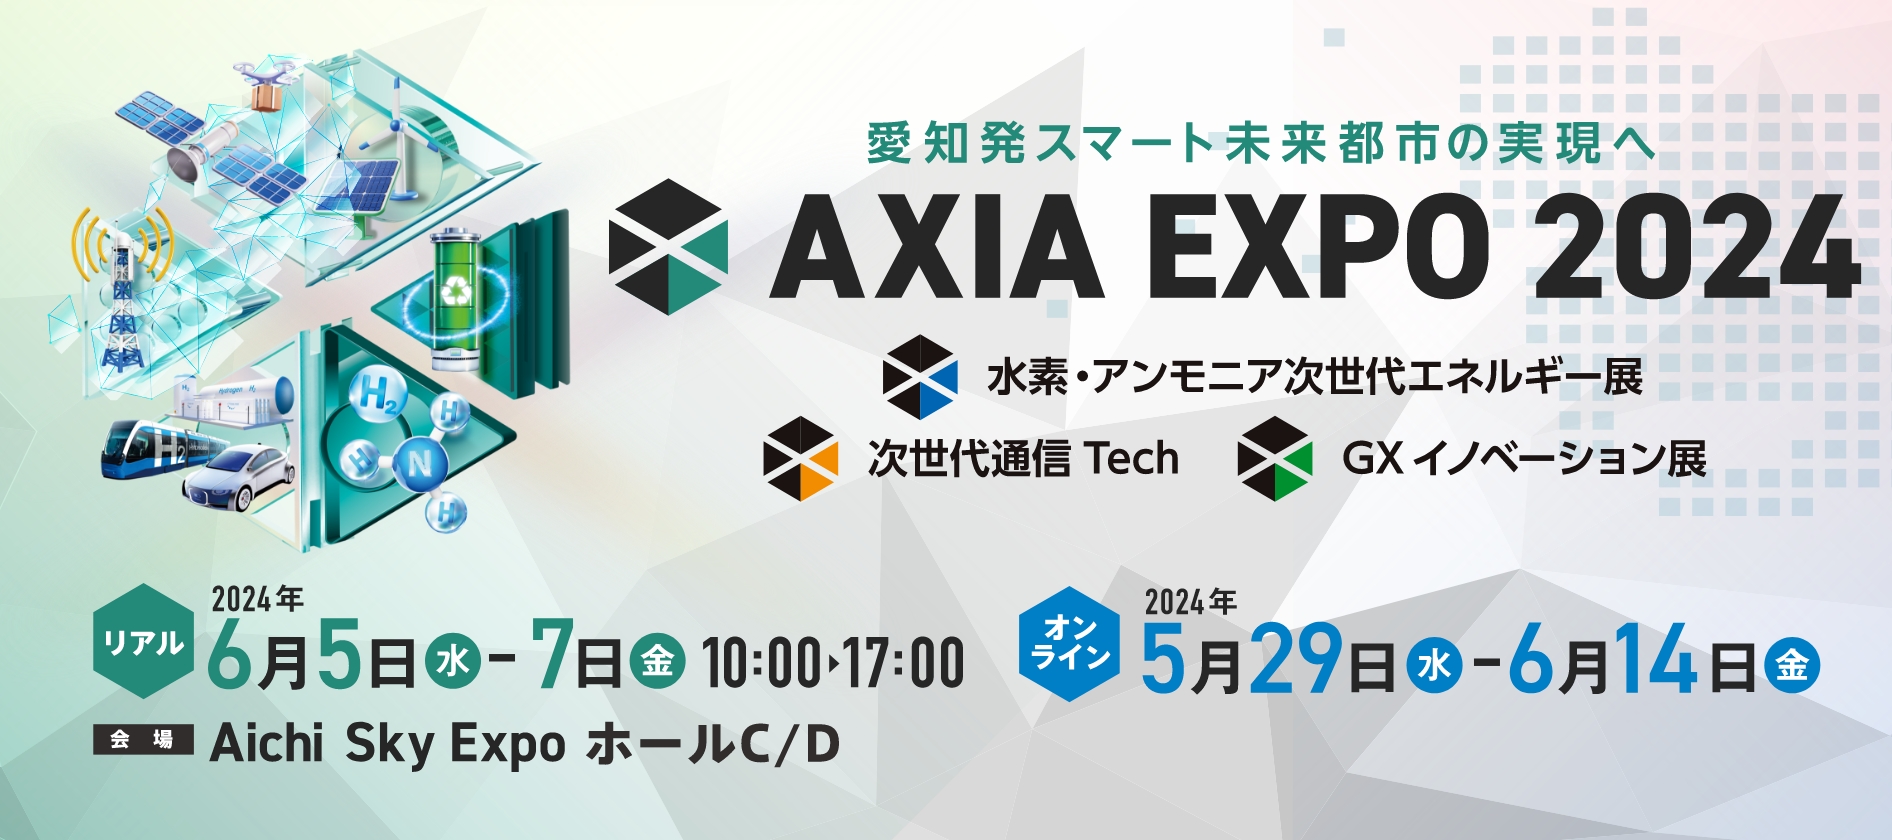 AXIA EXPO 2024